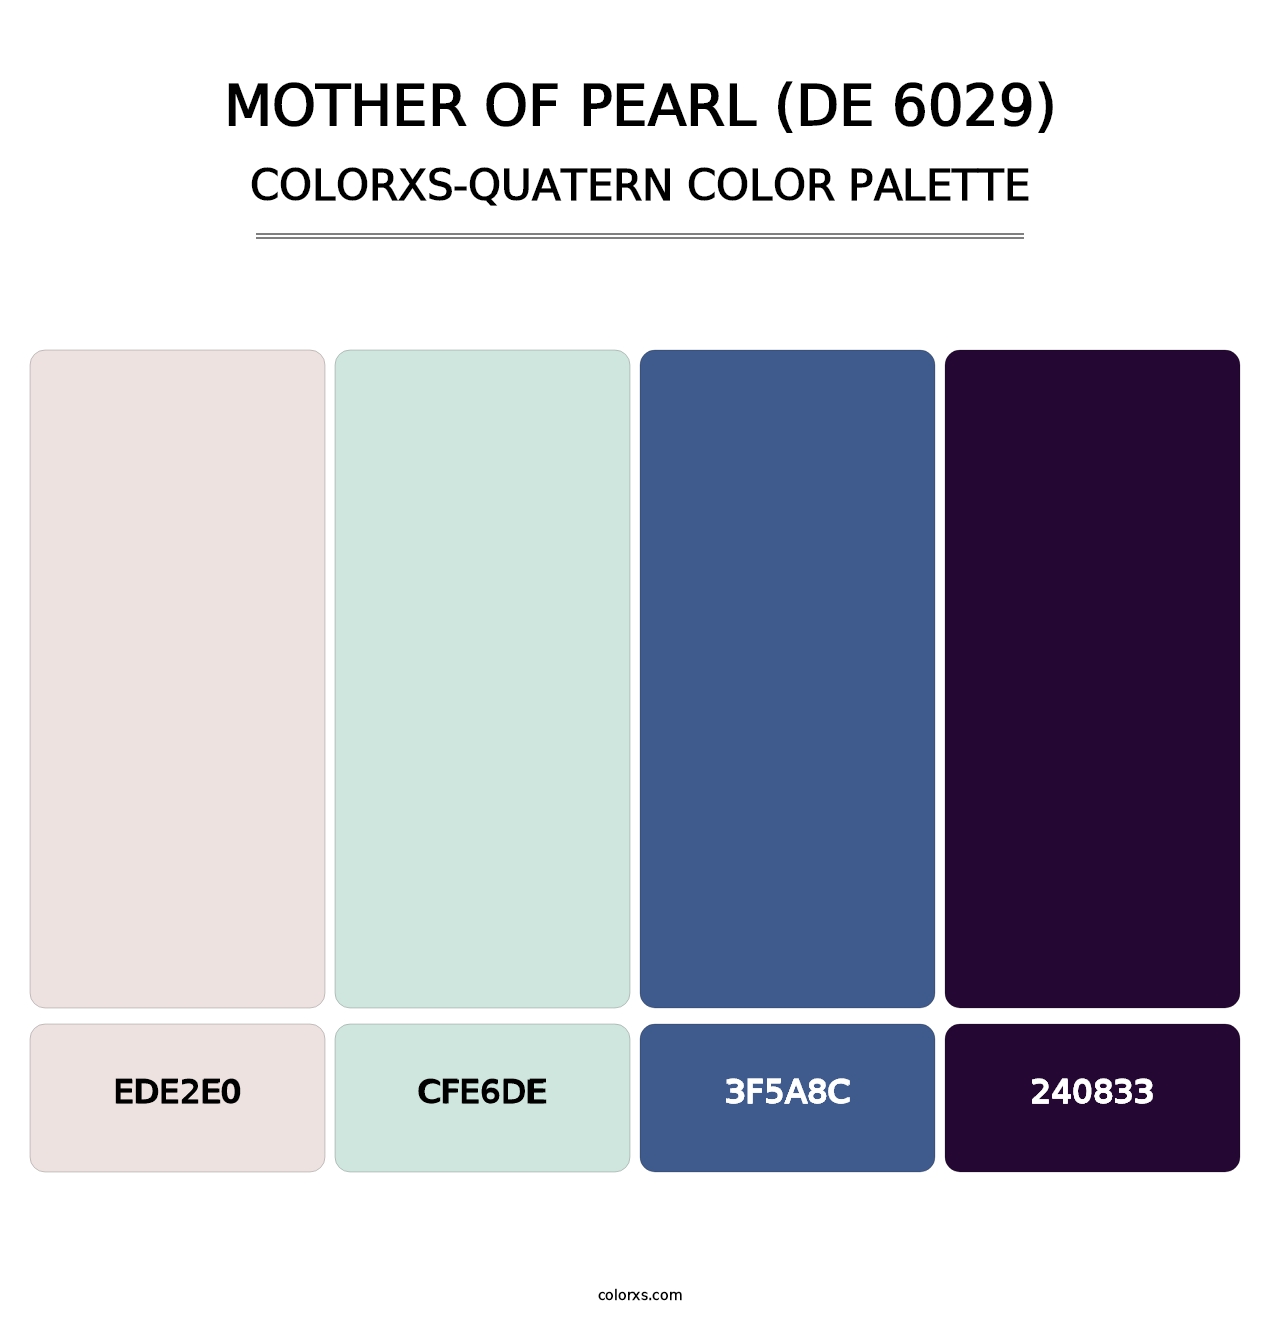 Mother of Pearl (DE 6029) - Colorxs Quatern Palette